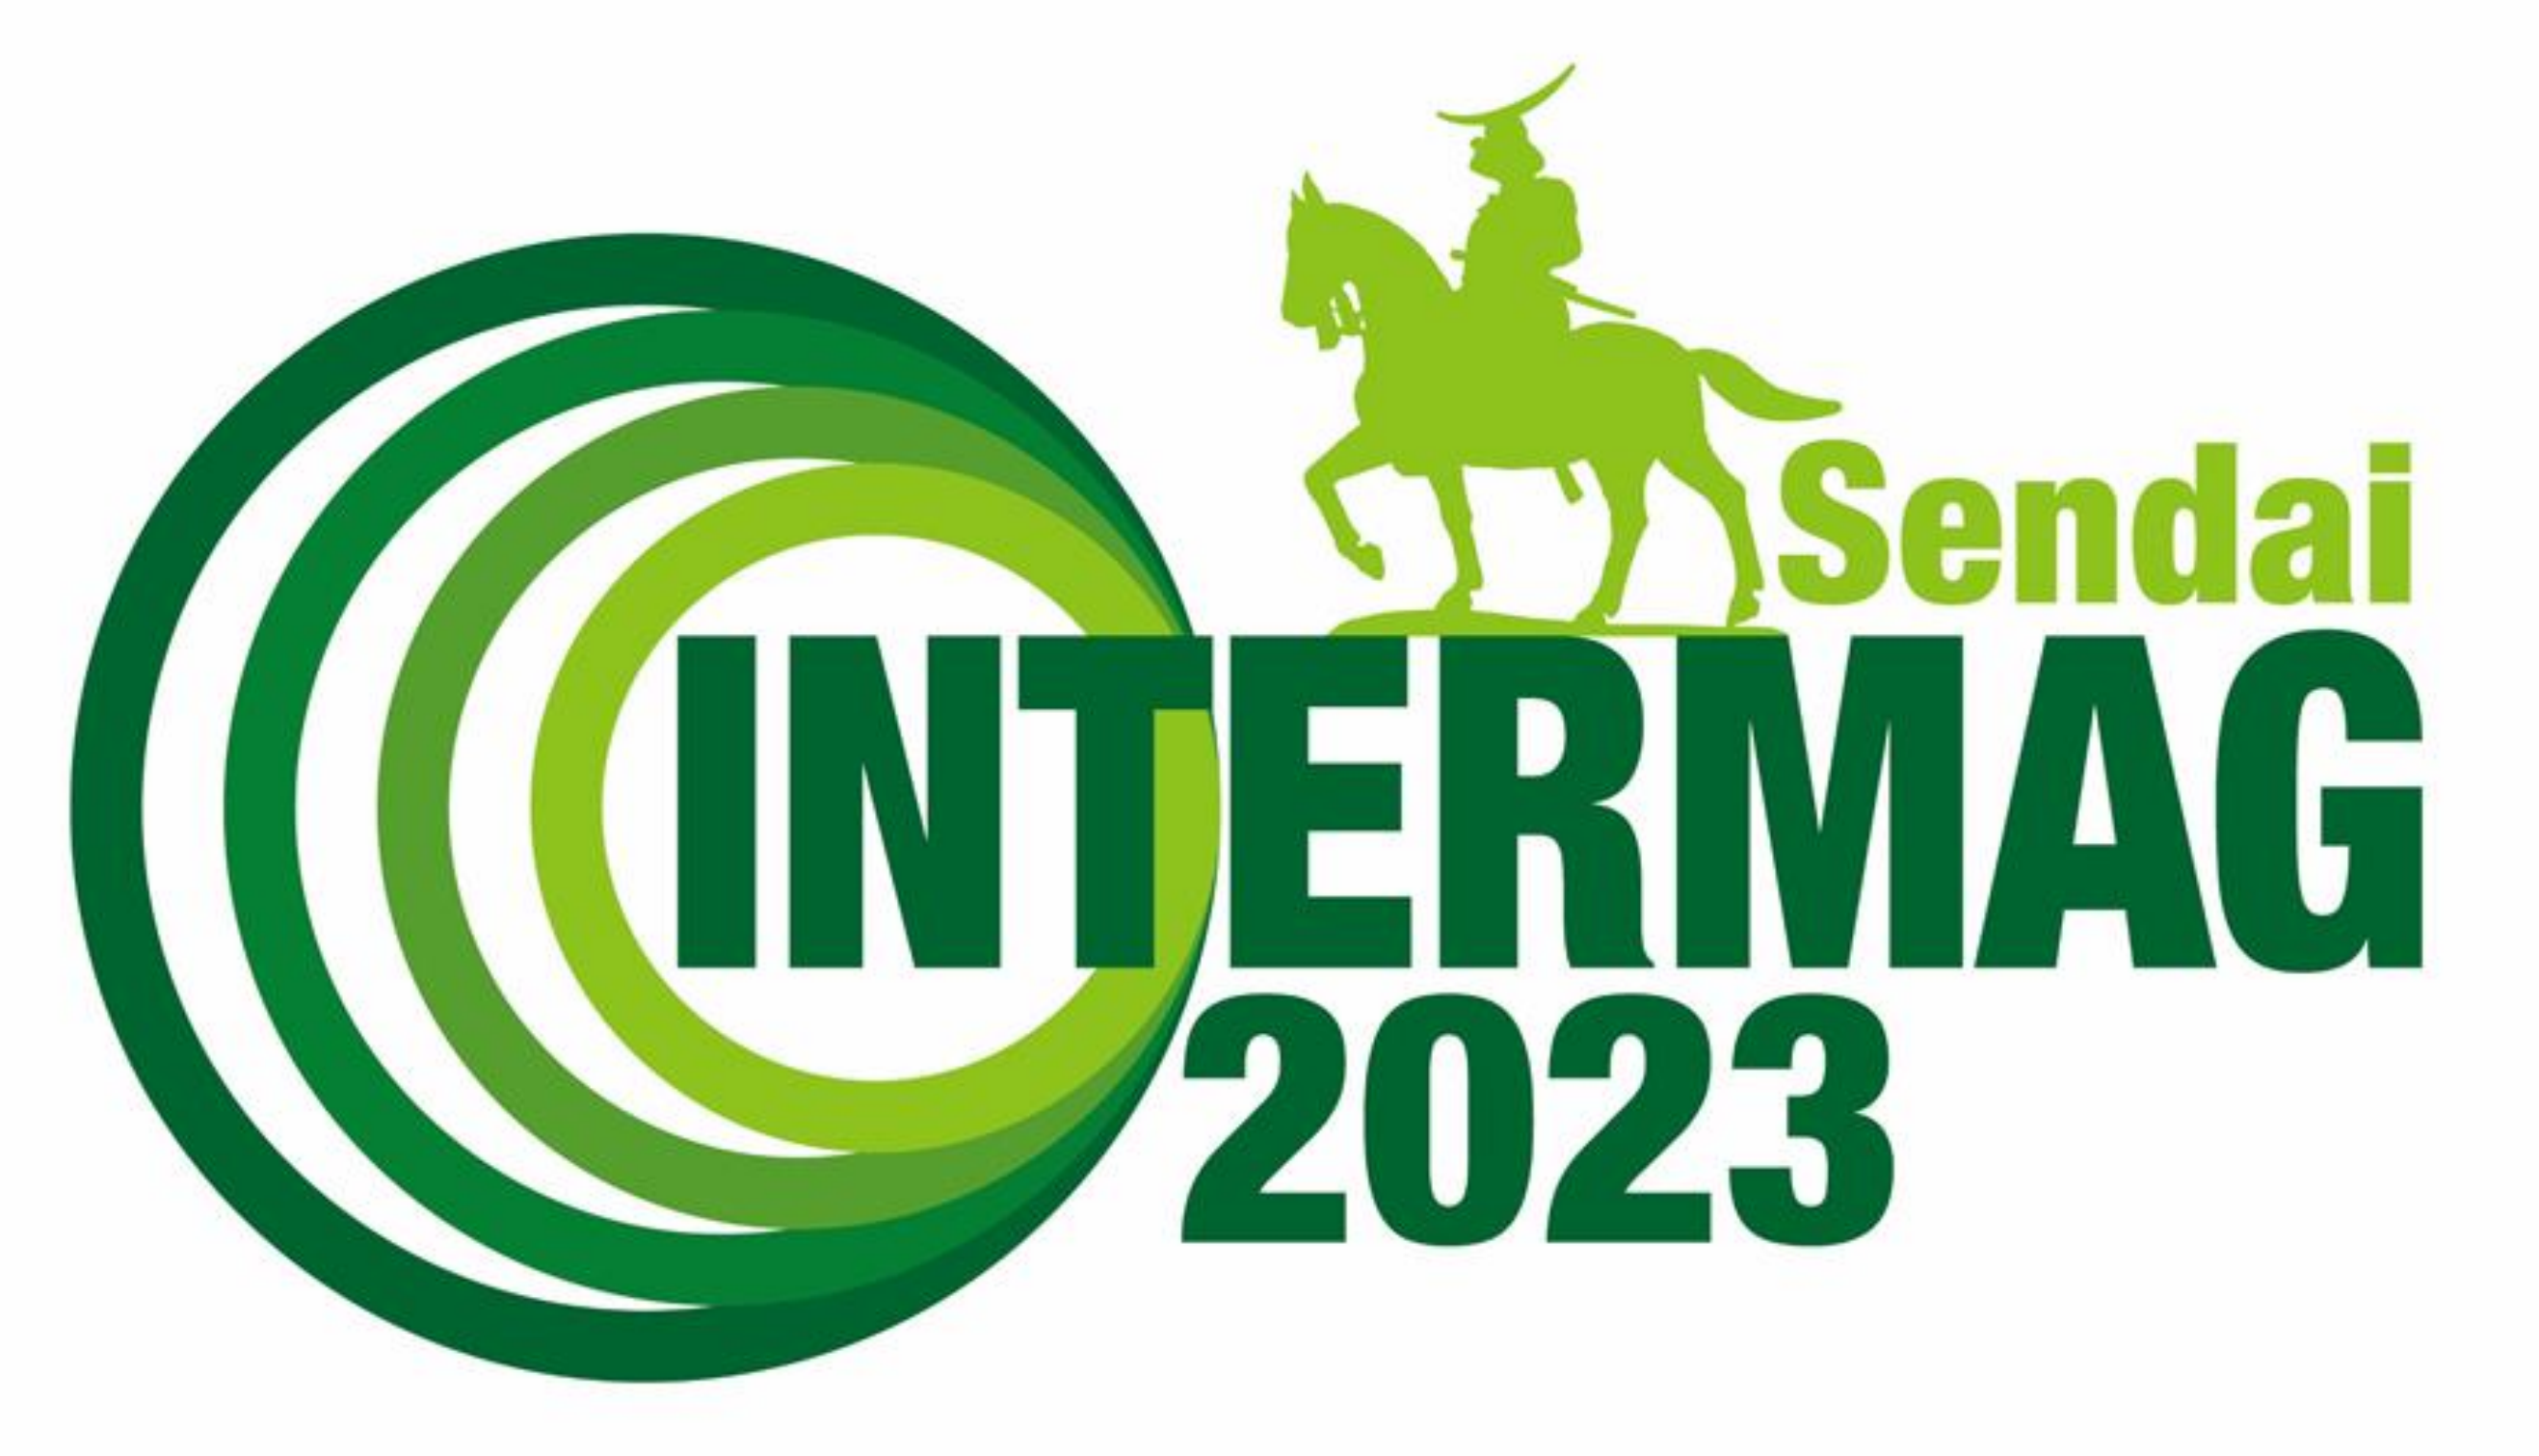 Runner-up Intermag 2023 logo